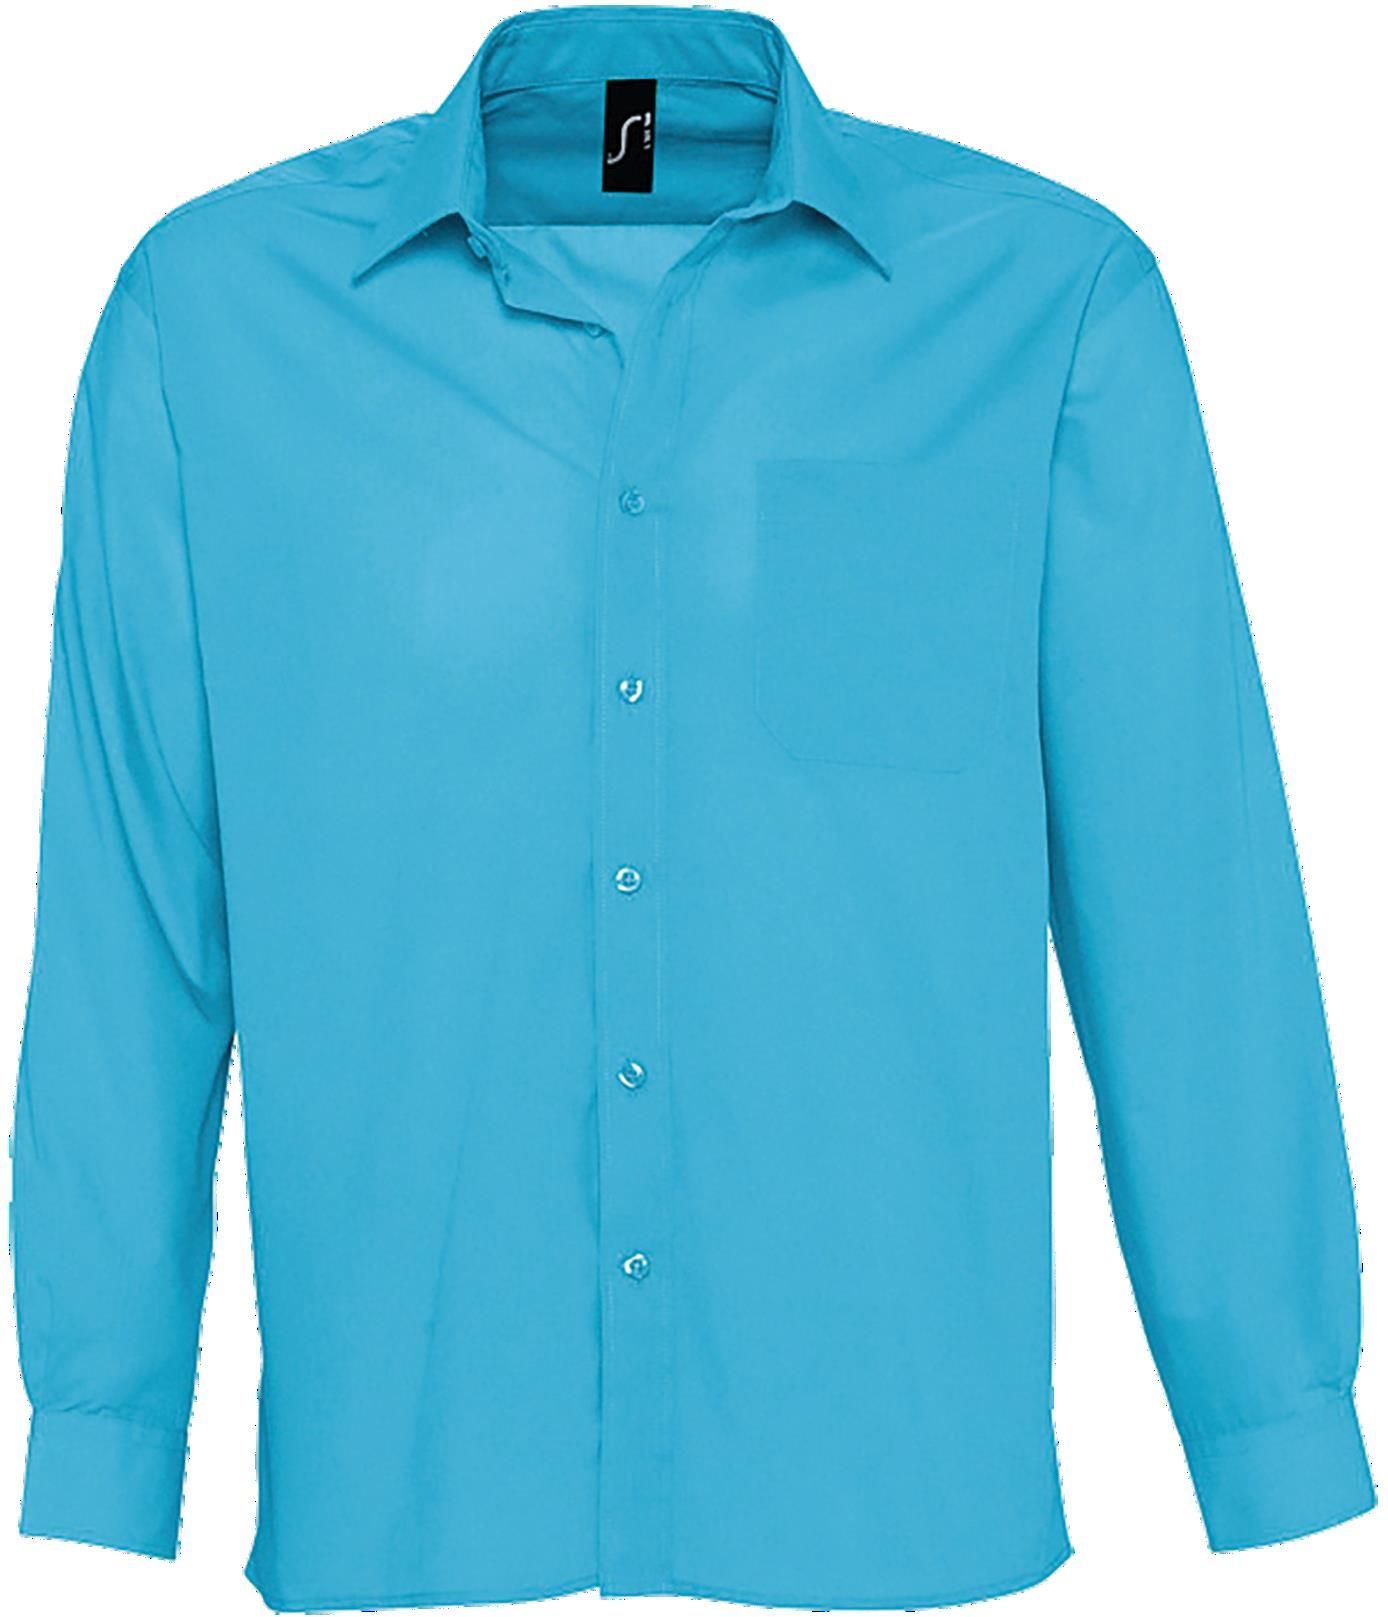 Ανδρικό μακρυμάνικο πουκάμισο από ποπλίνα Baltimore SOLS 16040 Atoll Blue 197846